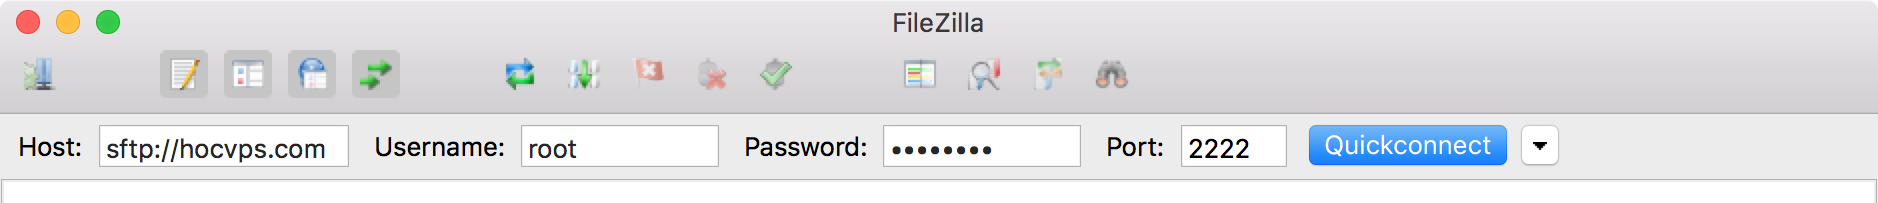 FileZilla Quick Connect